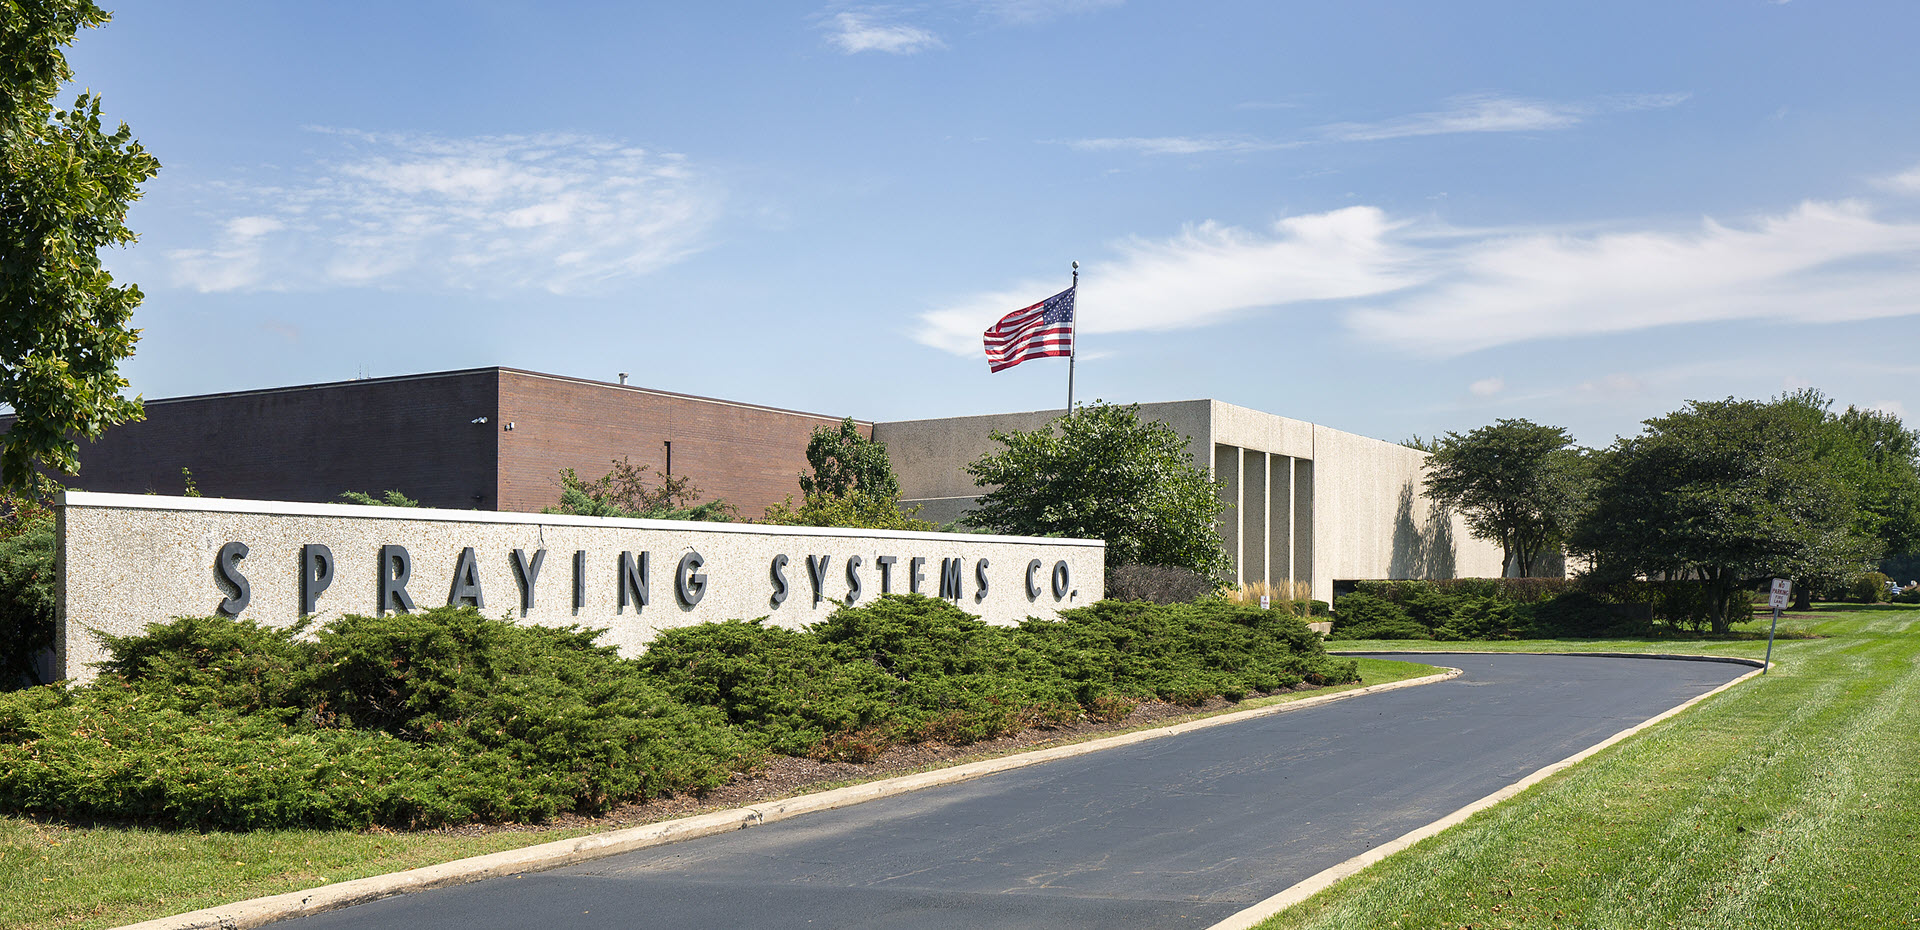 Edifício de escritórios da Spraying Systems Co. em Wheaton, IL